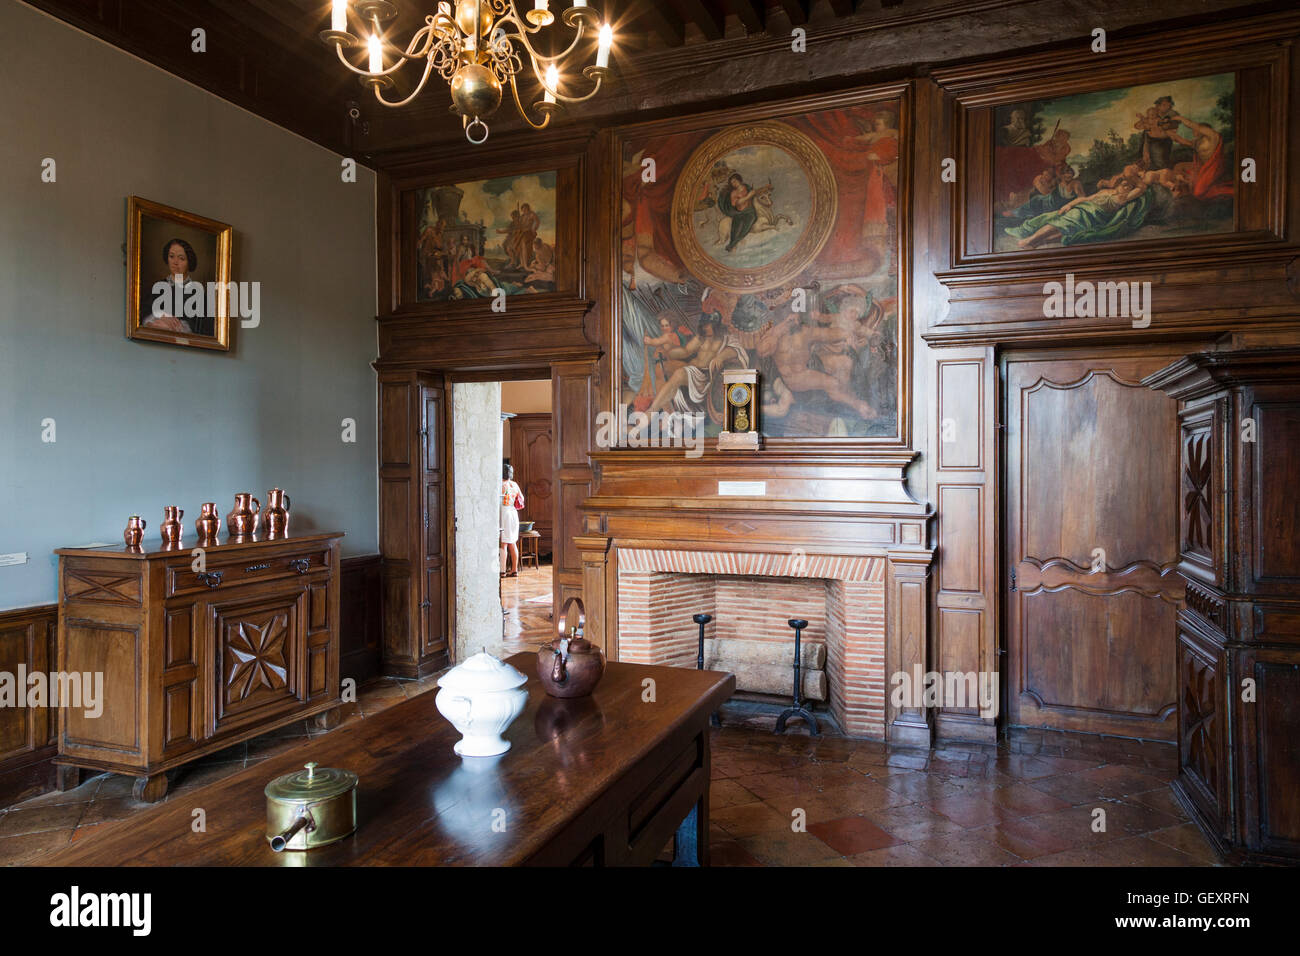 Le petit salon avec un mobilier typique de 17 siècle à l'intérieur du château de Monbazillac en France. Banque D'Images